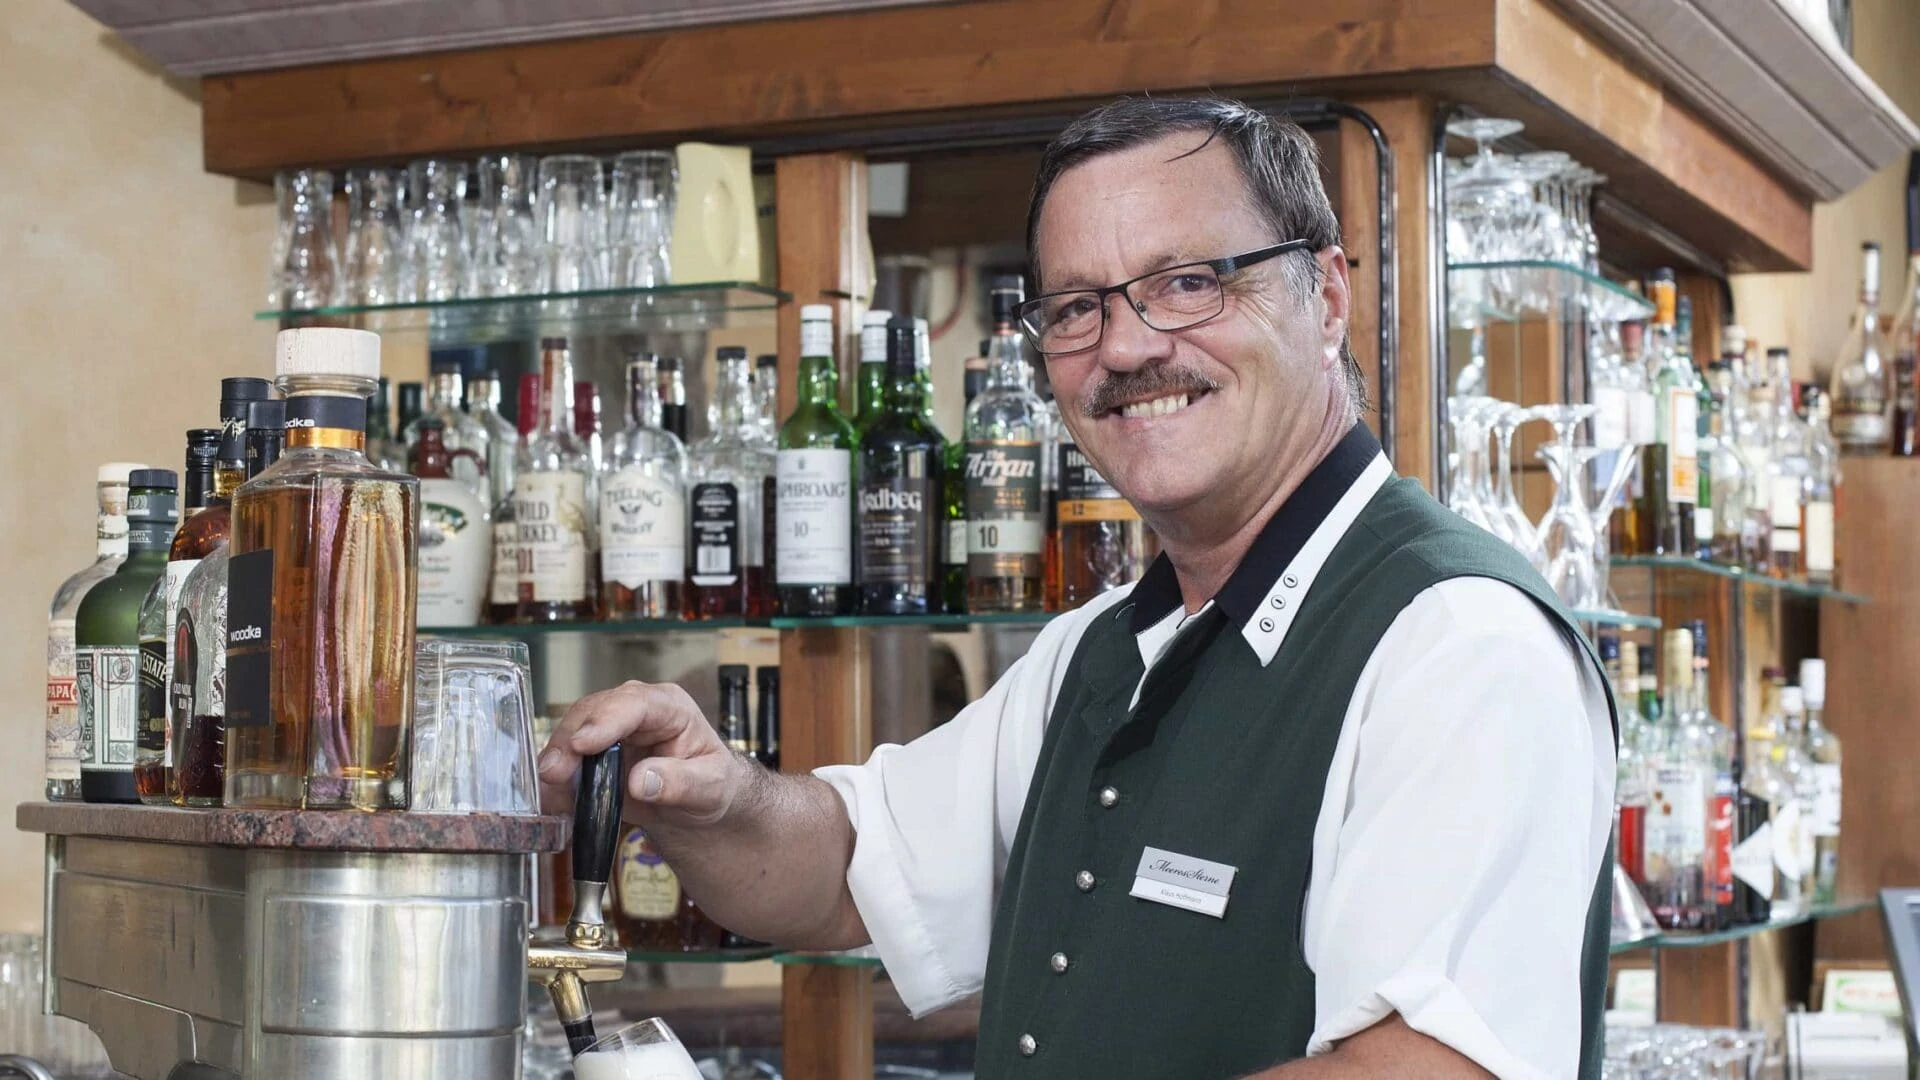 Hotel Forsthaus Damerow - Unser Barkeeper freut sich auf Sie!